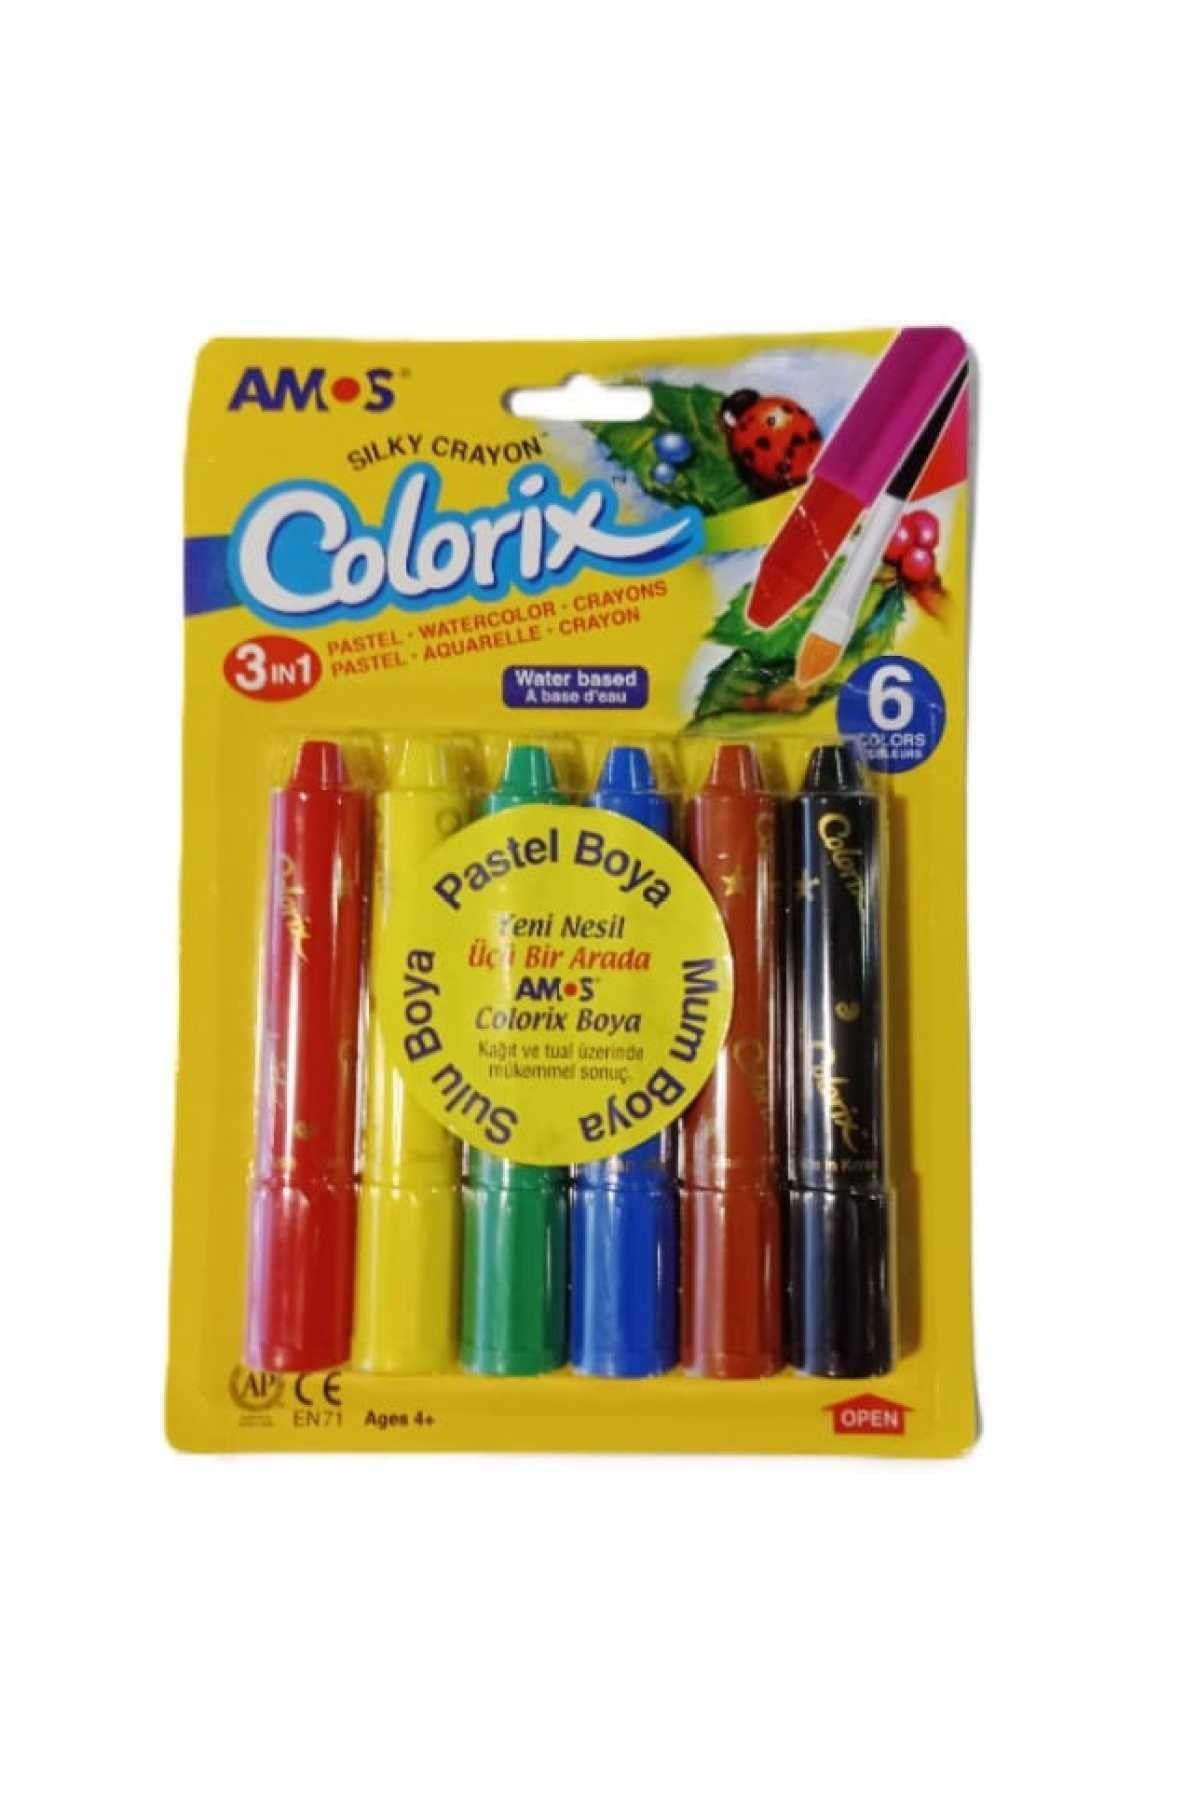 Amos Colorix 3in1 Pastel Boya 6'lı Yeni Ürün